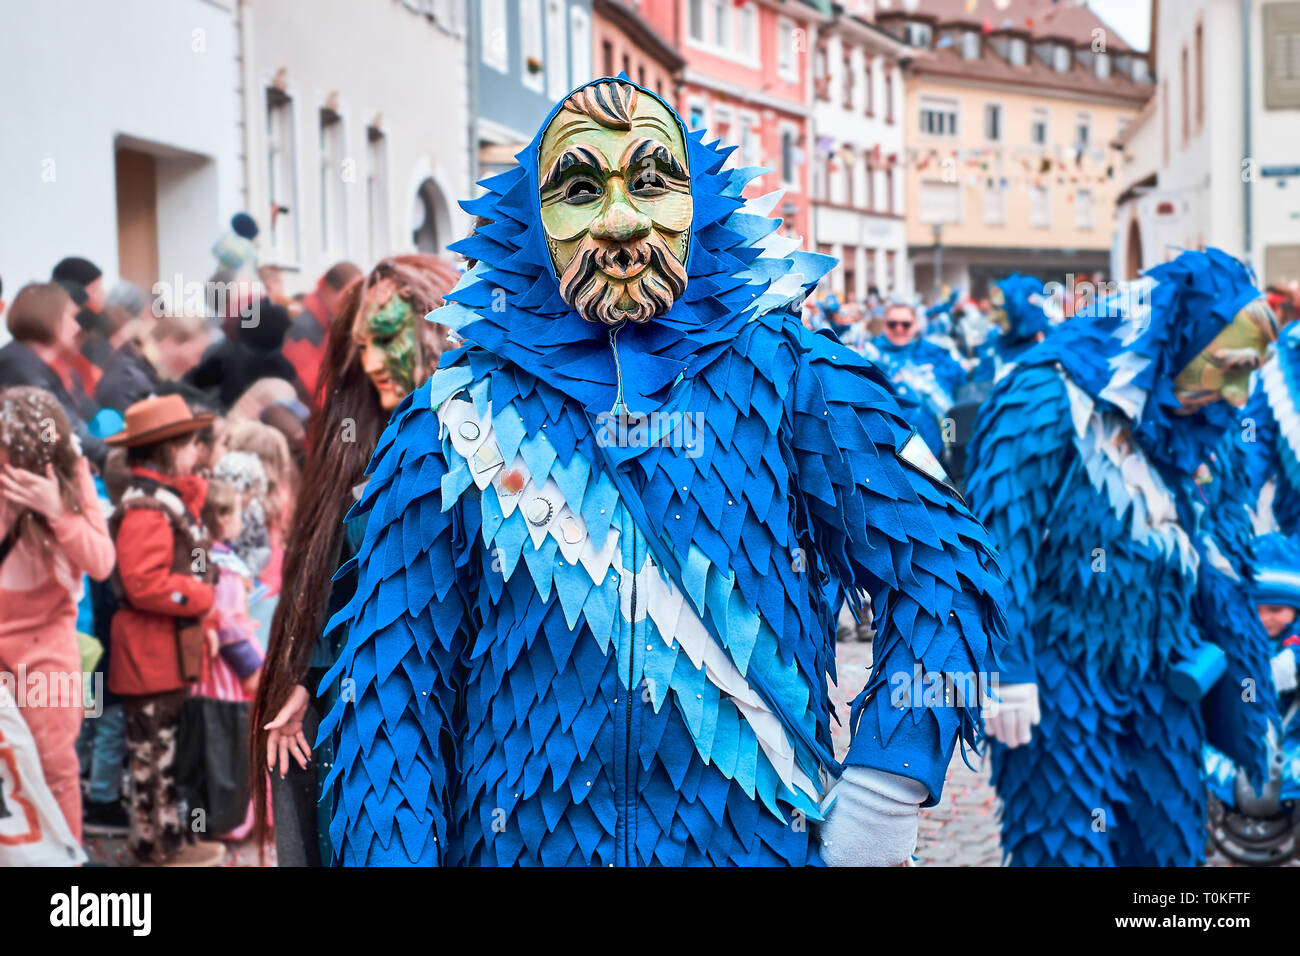 La figure de carnaval avec costume bleu et vert masque. Carnaval de rue dans le sud de l'Allemagne - Forêt Noire. Banque D'Images